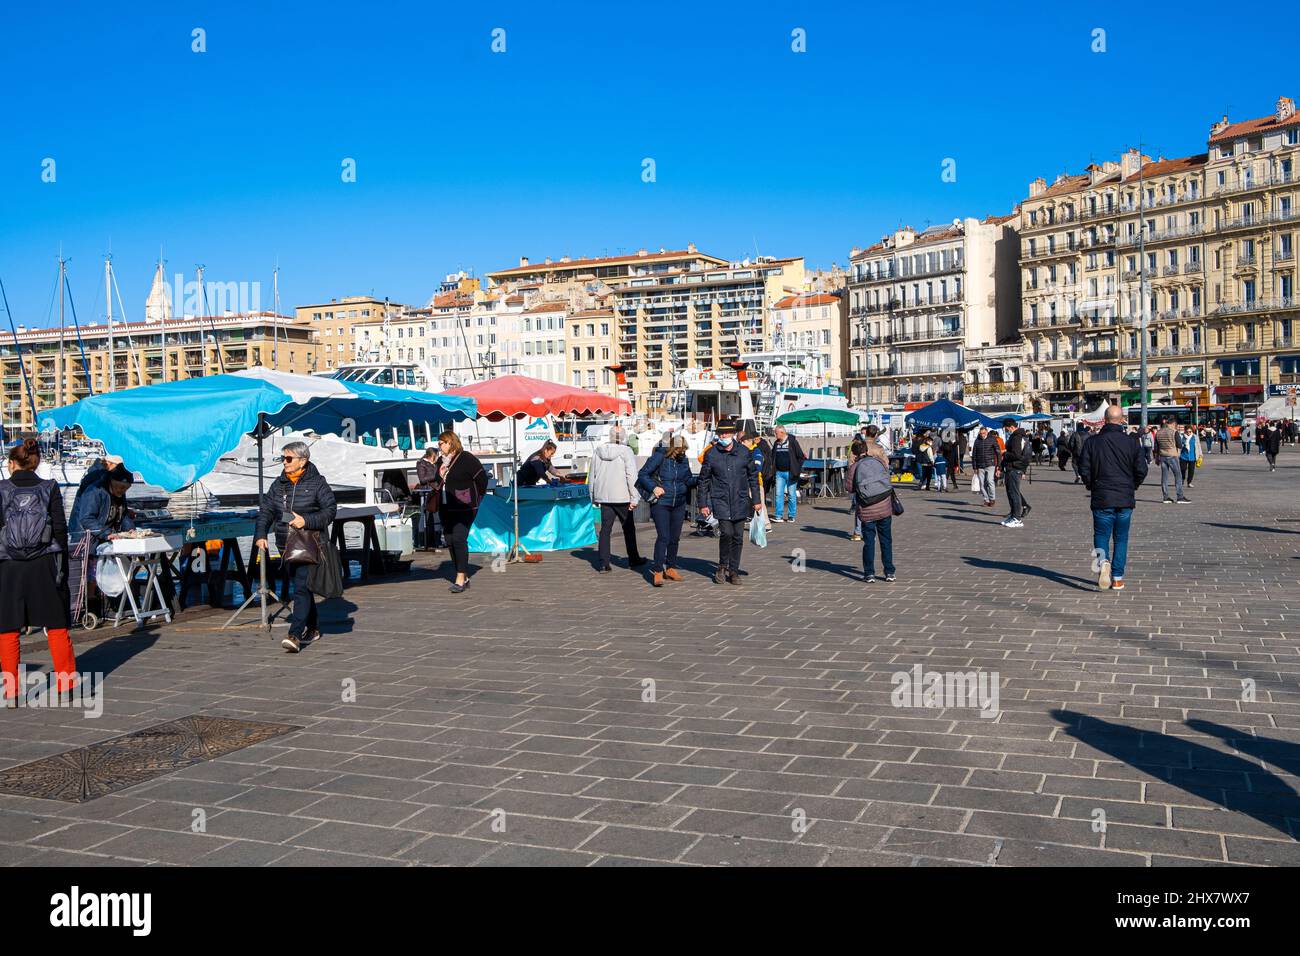 Vieux Port Marseille, Quai des Belges, France Paca Stock Photo